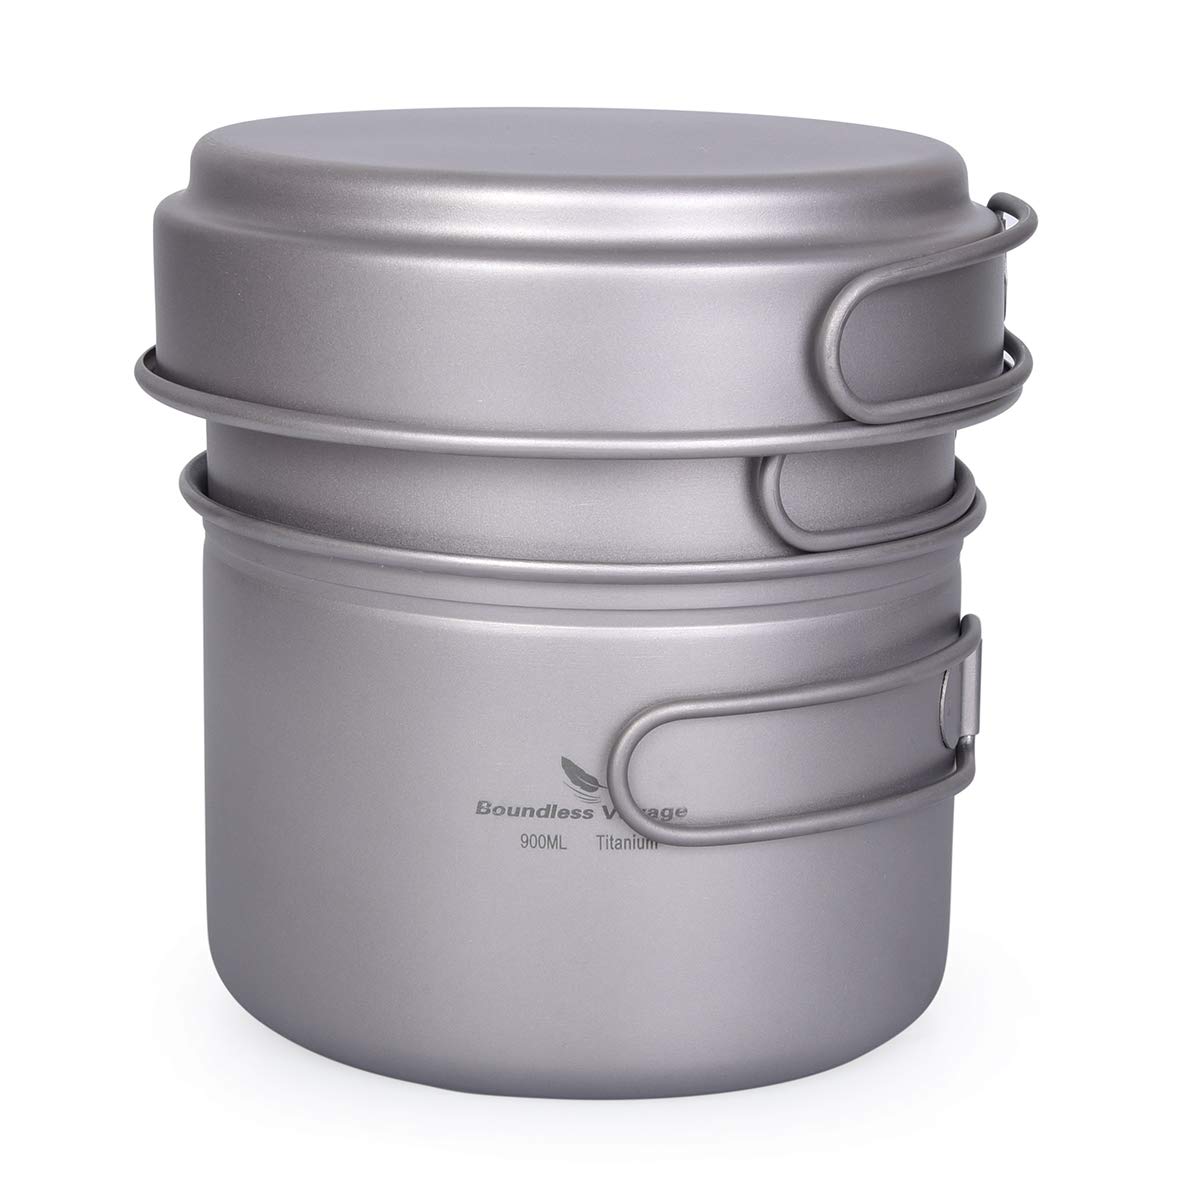 usharedo Camping Pot Bowl Frying Pan Mess Kit Titanium Pot Pan Set with Folding Handle Outdoor Cookware Ti1587B